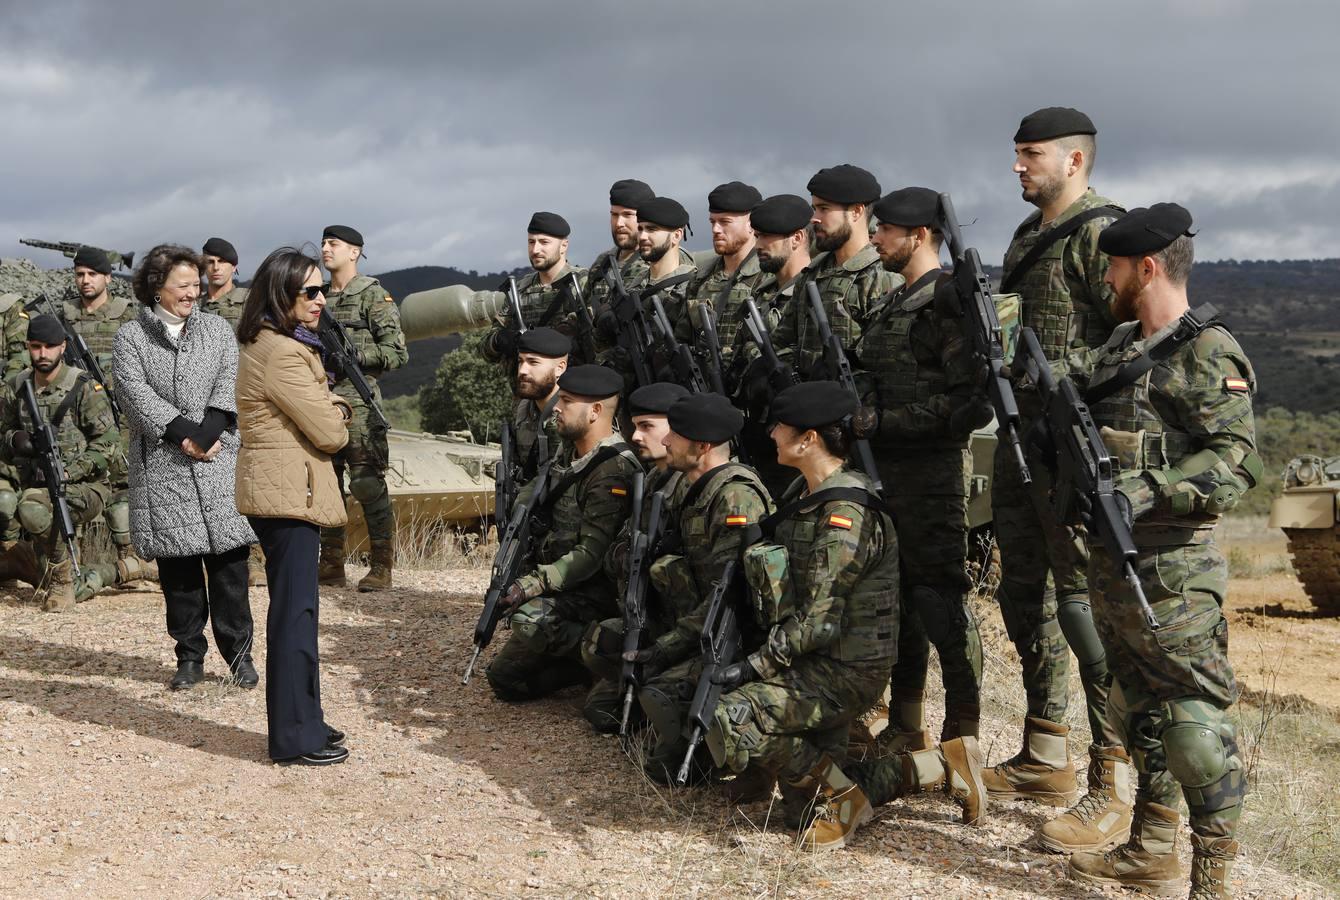 La visita de la ministra de Defensa a Cerro Muriano, en imágenes